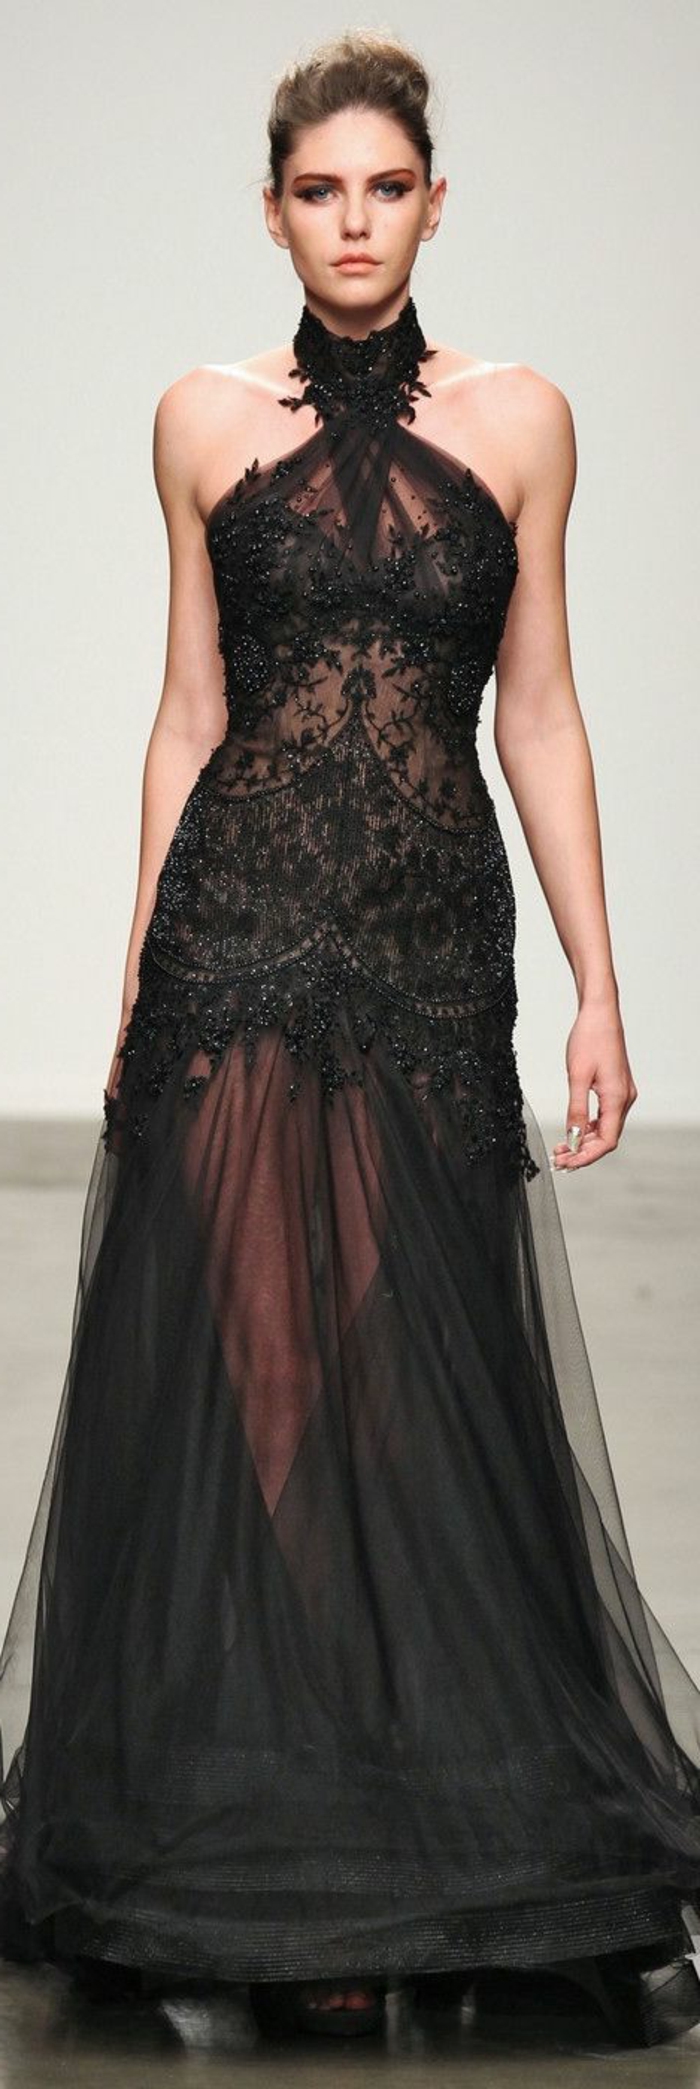 une-vraie-tendance-la-robe-fluide-habillée-de-couleur-noir-femmes-modernes